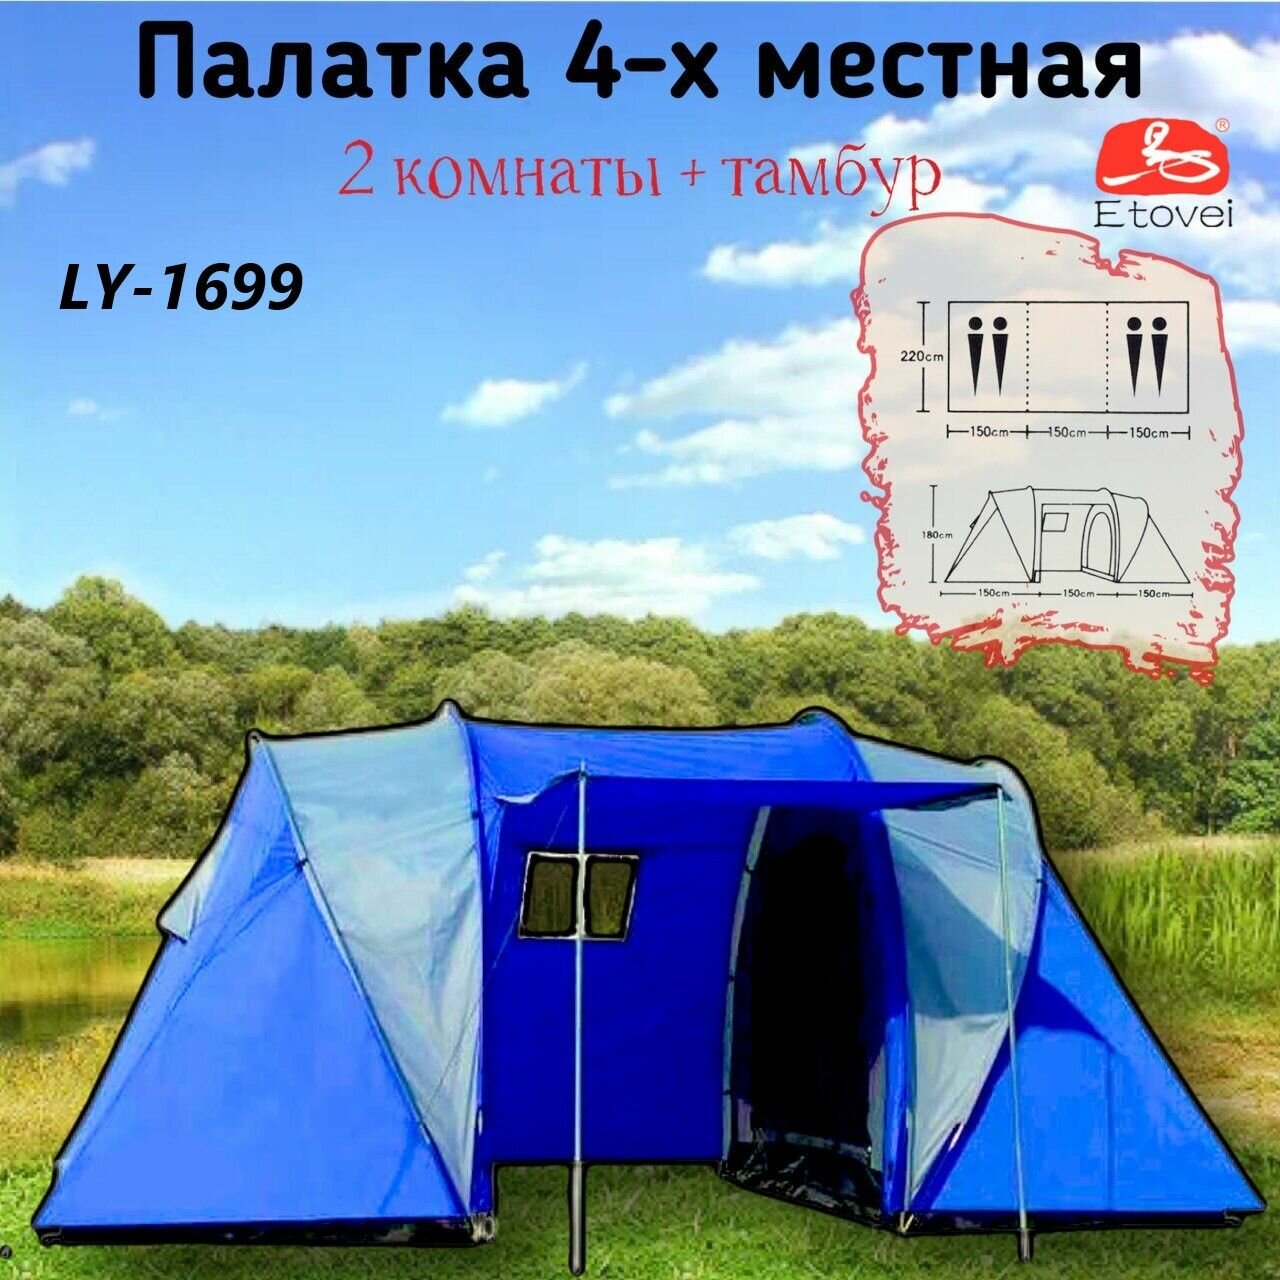 Палатка туристическая 4-х местная LY-1699